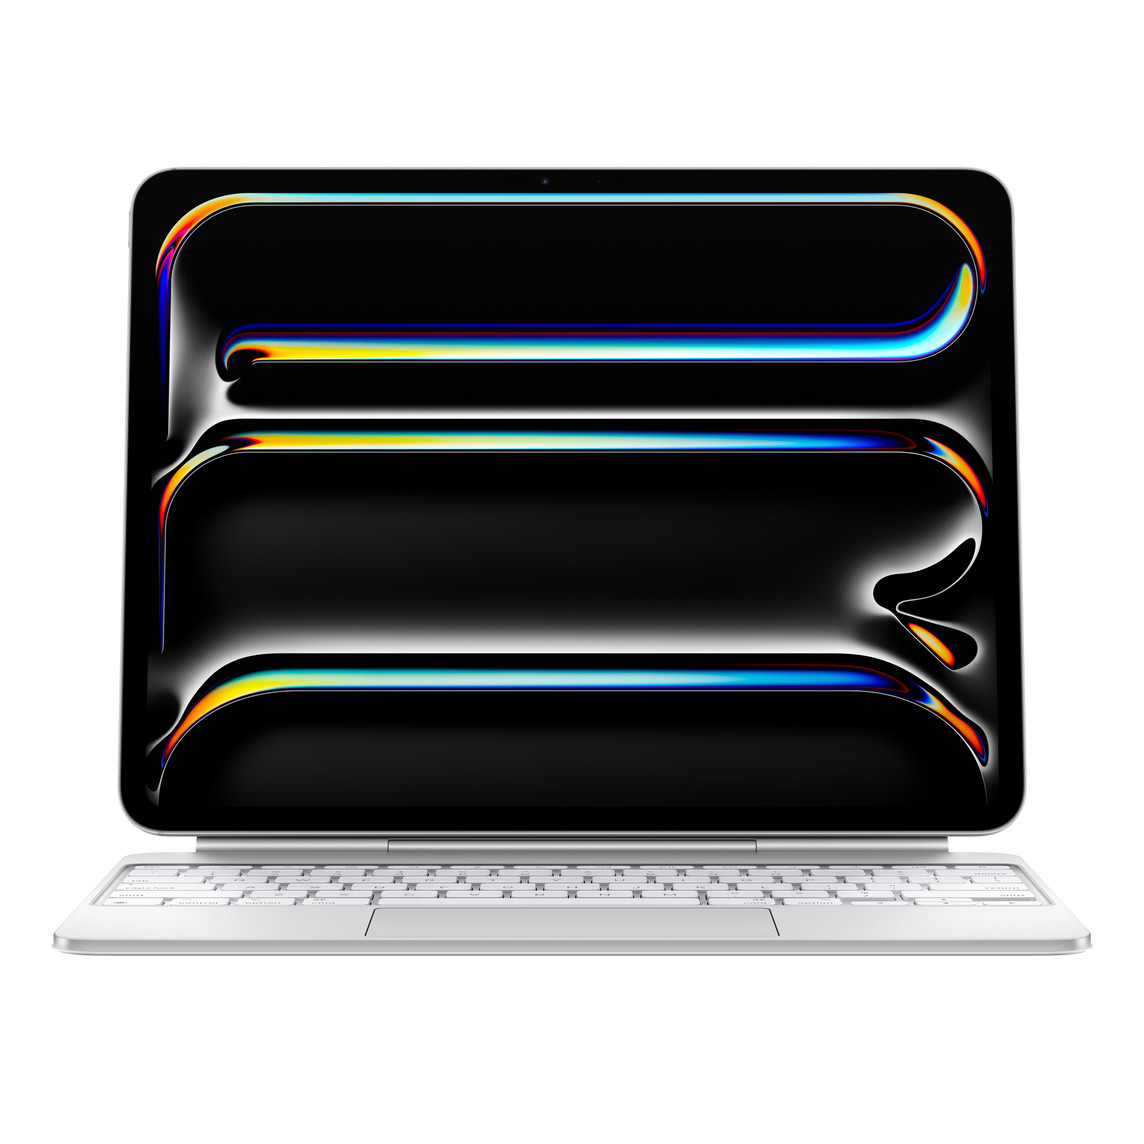 Imagen del iPad Pro acoplado a un Magic Keyboard blanco en posición horizontal